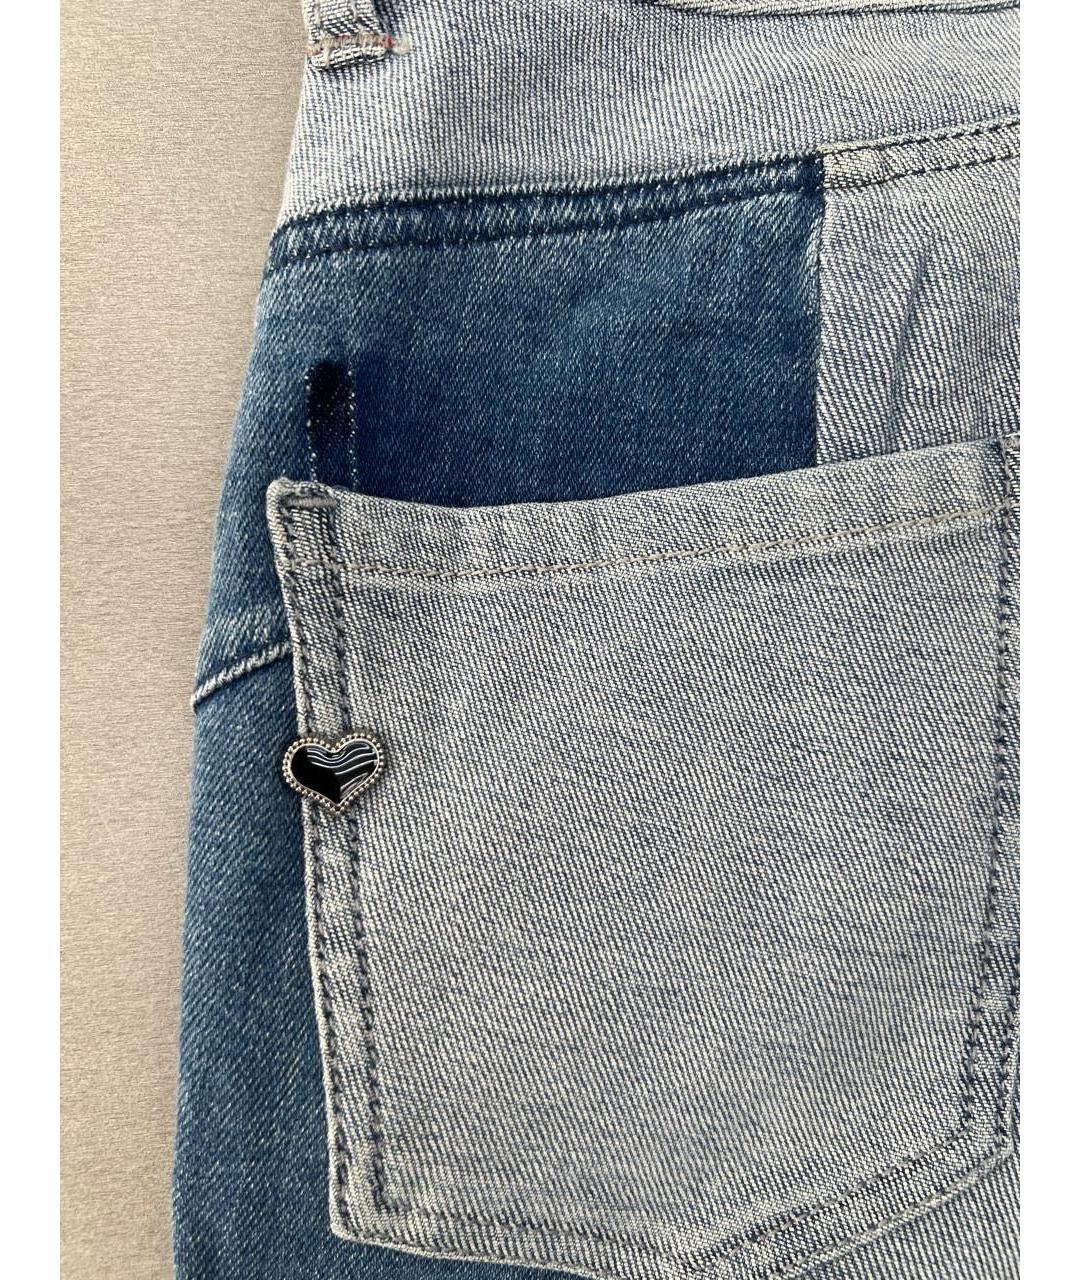 TWIN-SET Синие хлопковые прямые джинсы, фото 4